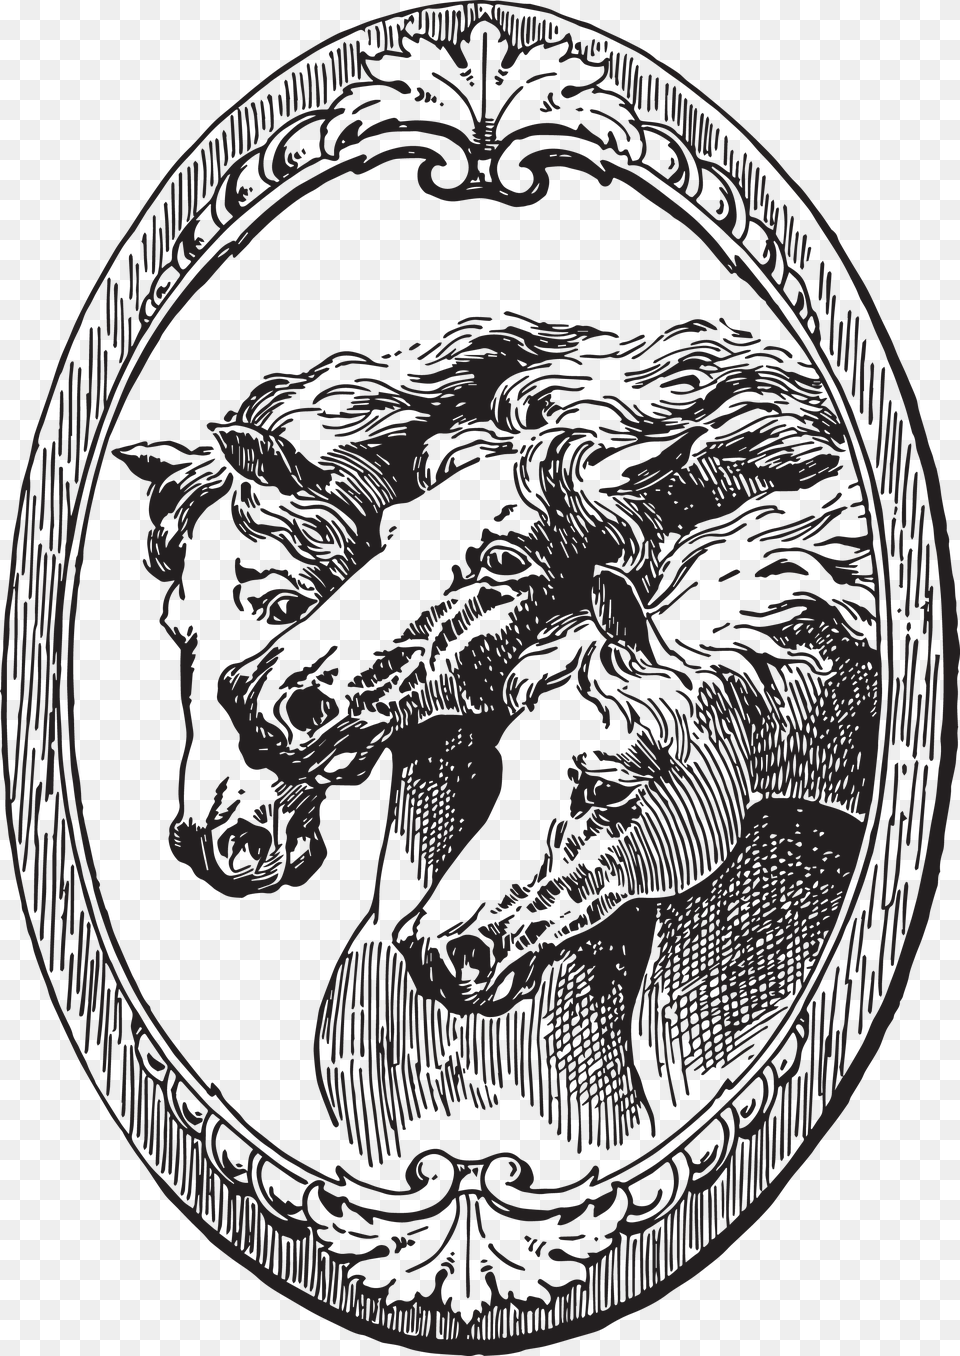 Vintage Horse Illustration, Home Decor, Emblem, Symbol, Person Png Image